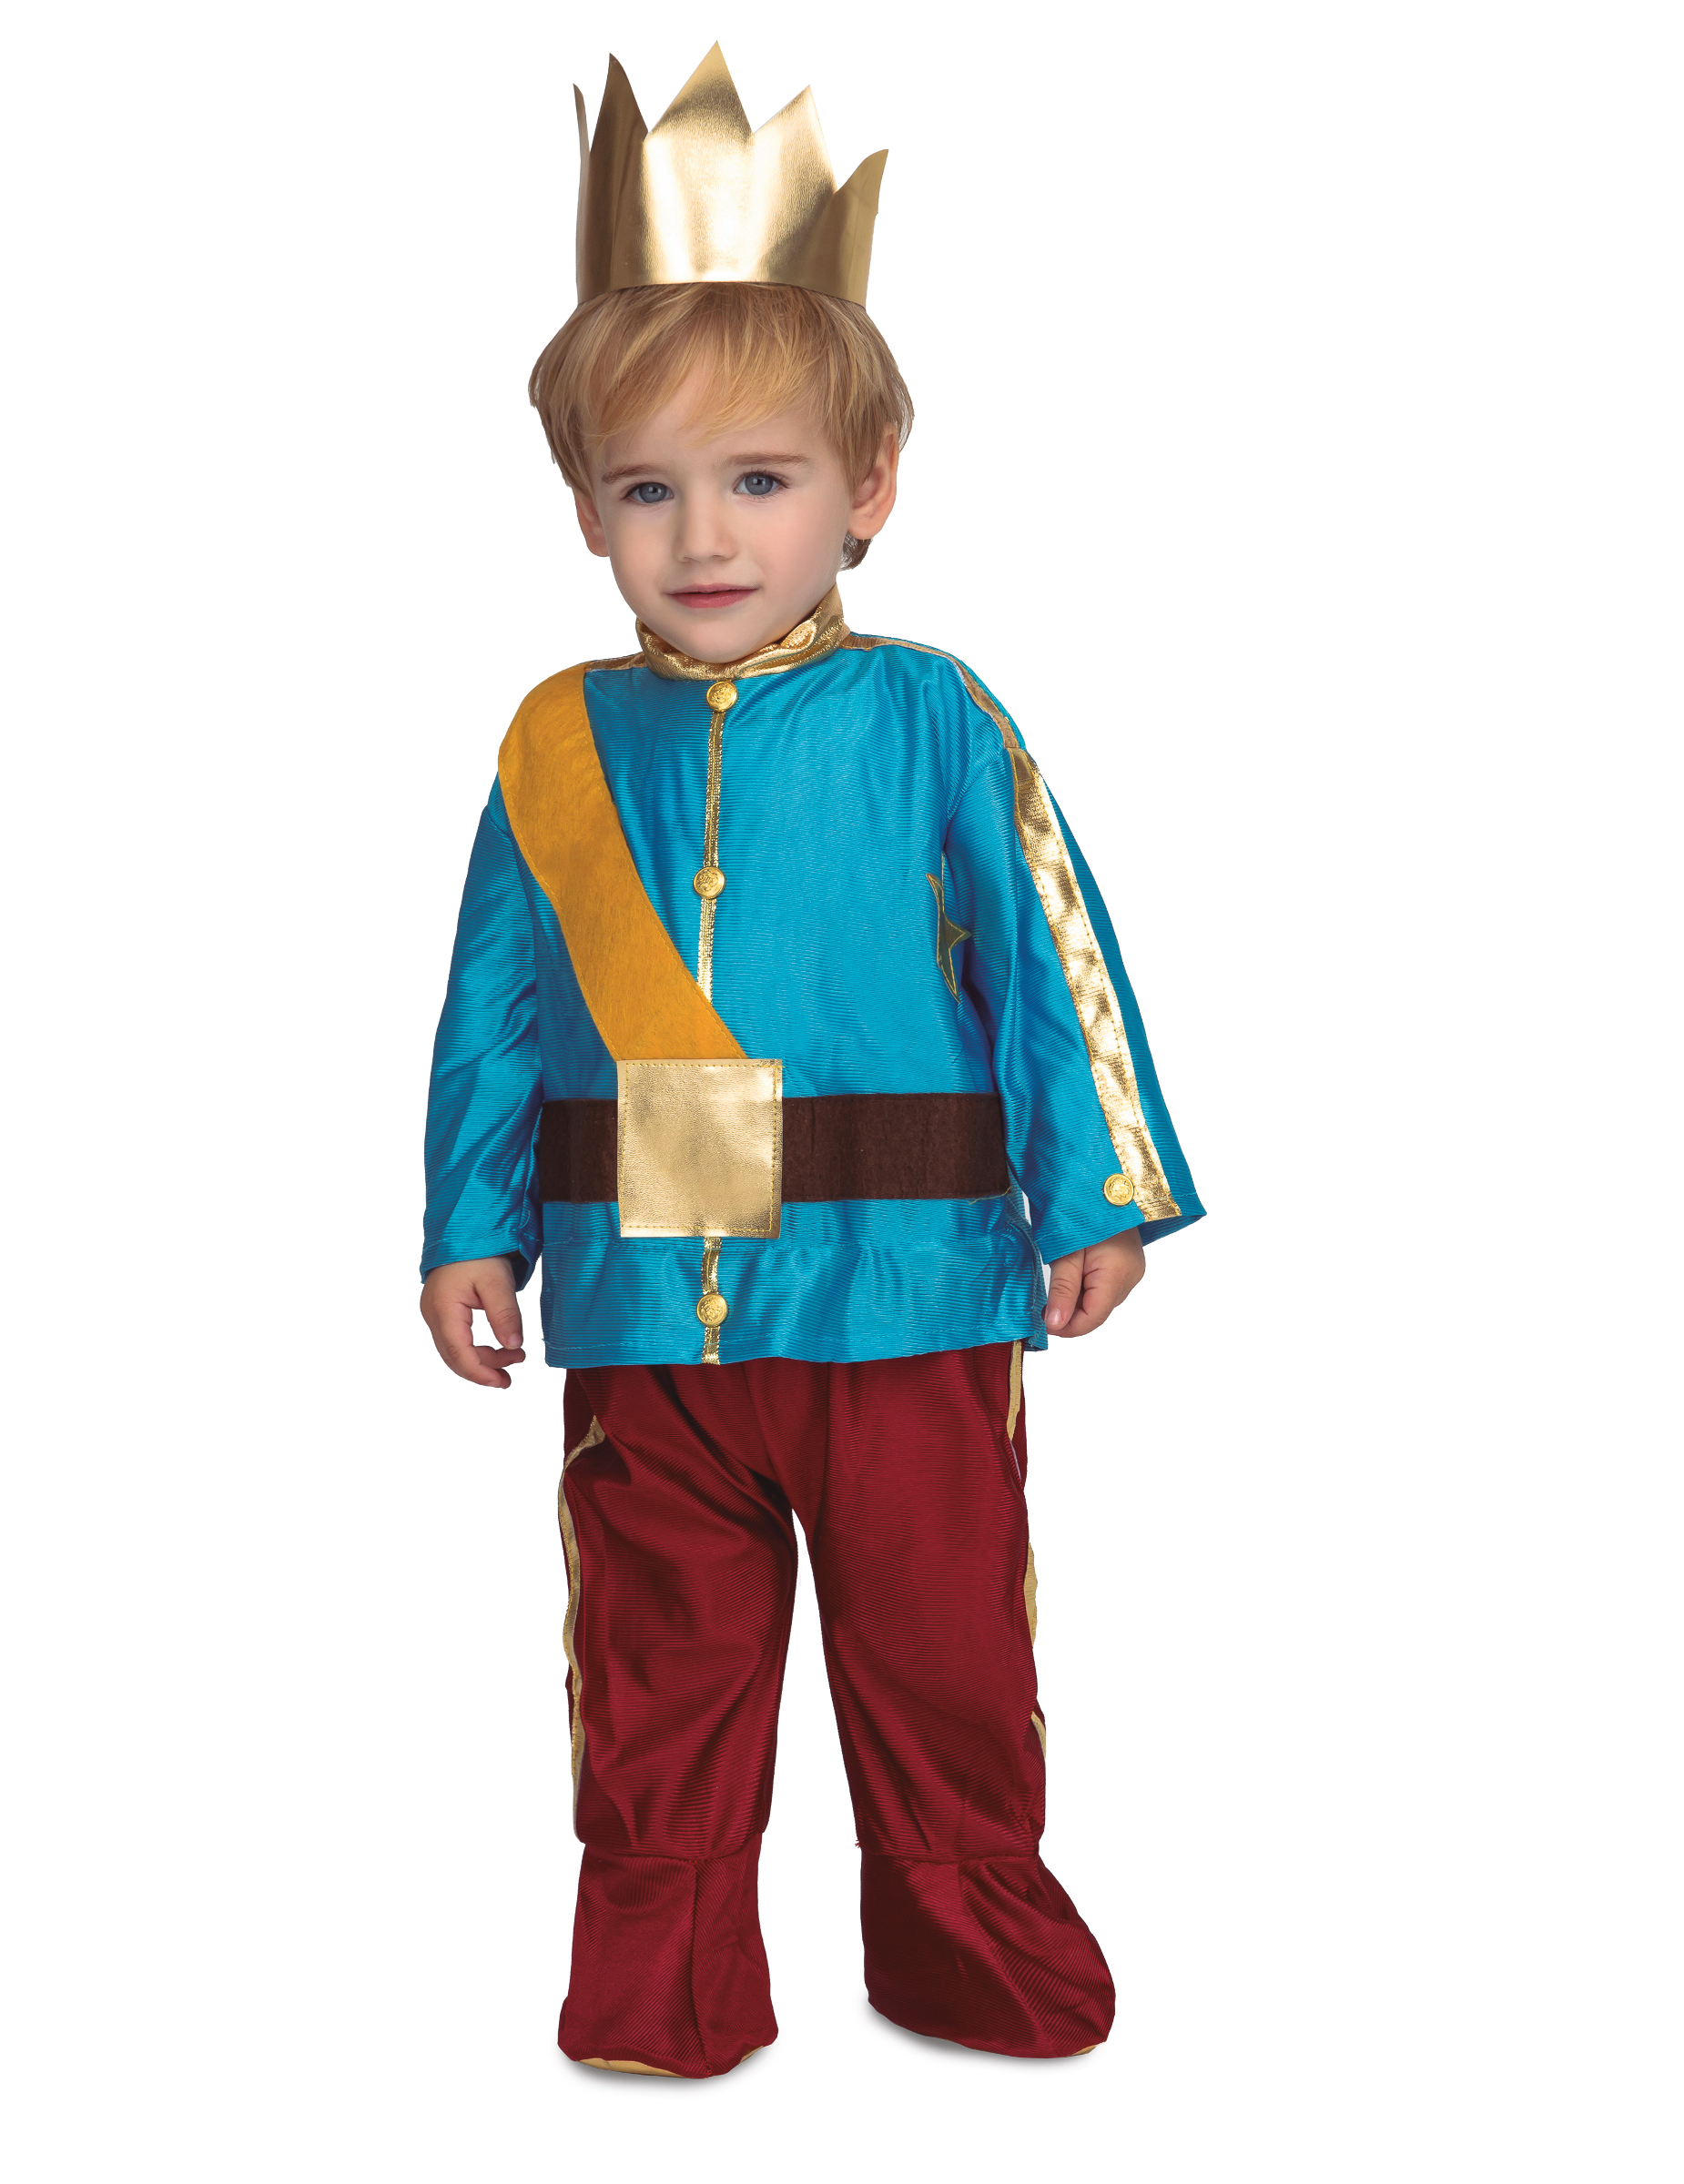 Prinzen-Kostüm für Jungen Kleinkinderkostüm Fasching rot-blau-gold von VIVING COSTUMES / JUINSA